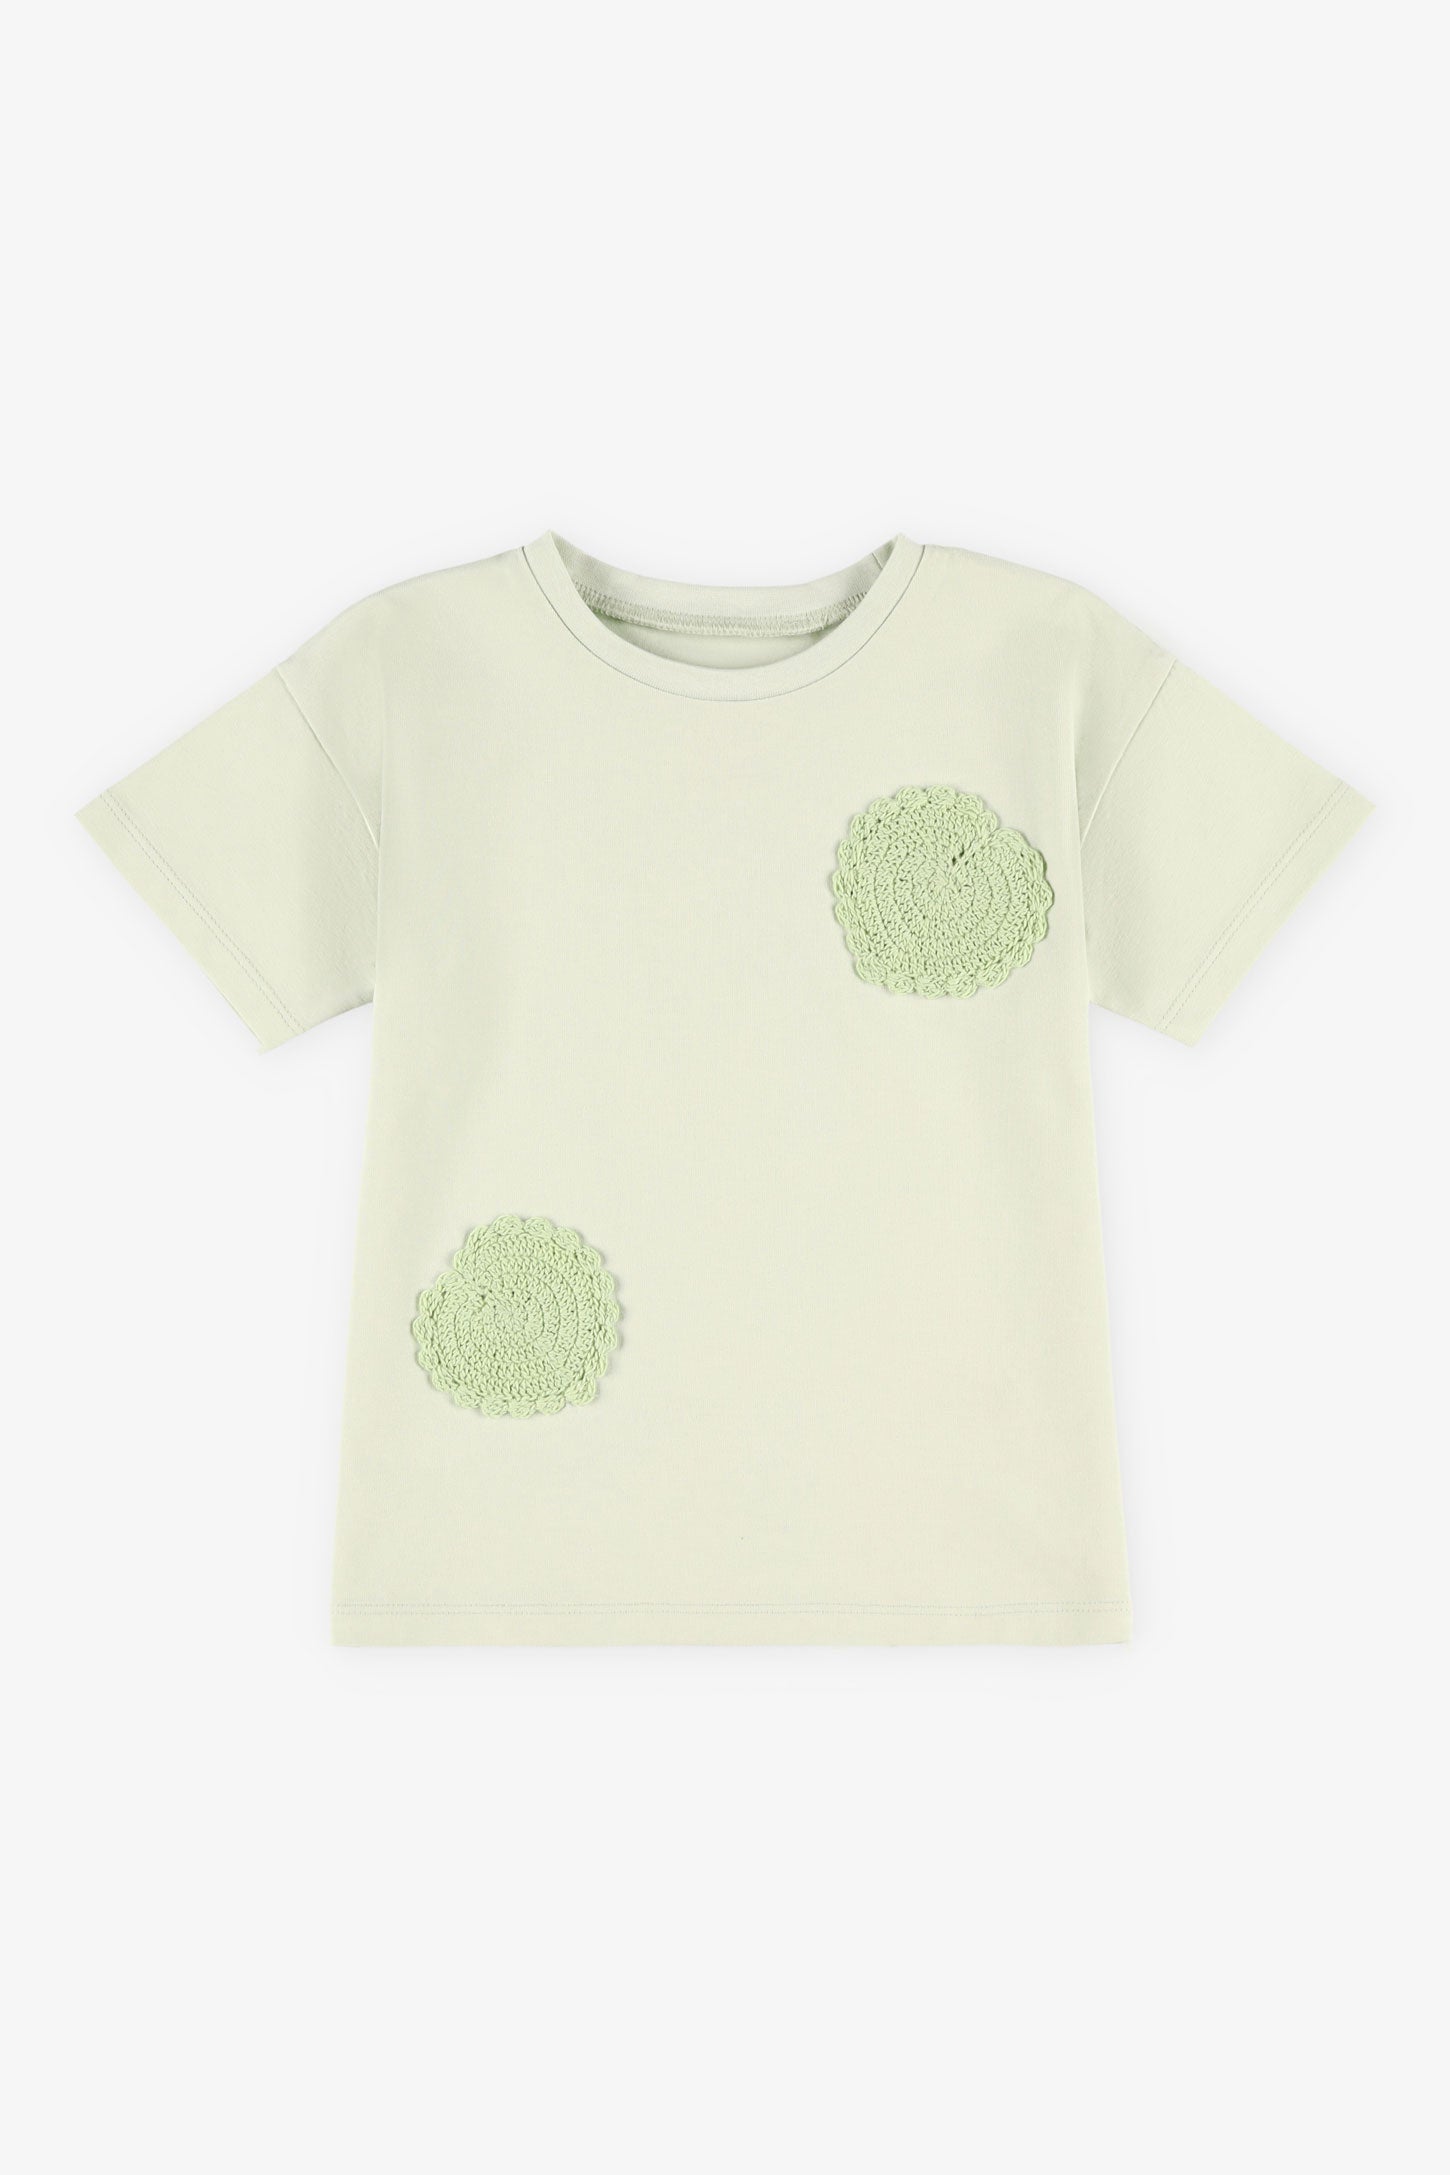 T-shirt coton avec appliqué crochet, 2T-3T - Bébé fille && VERT